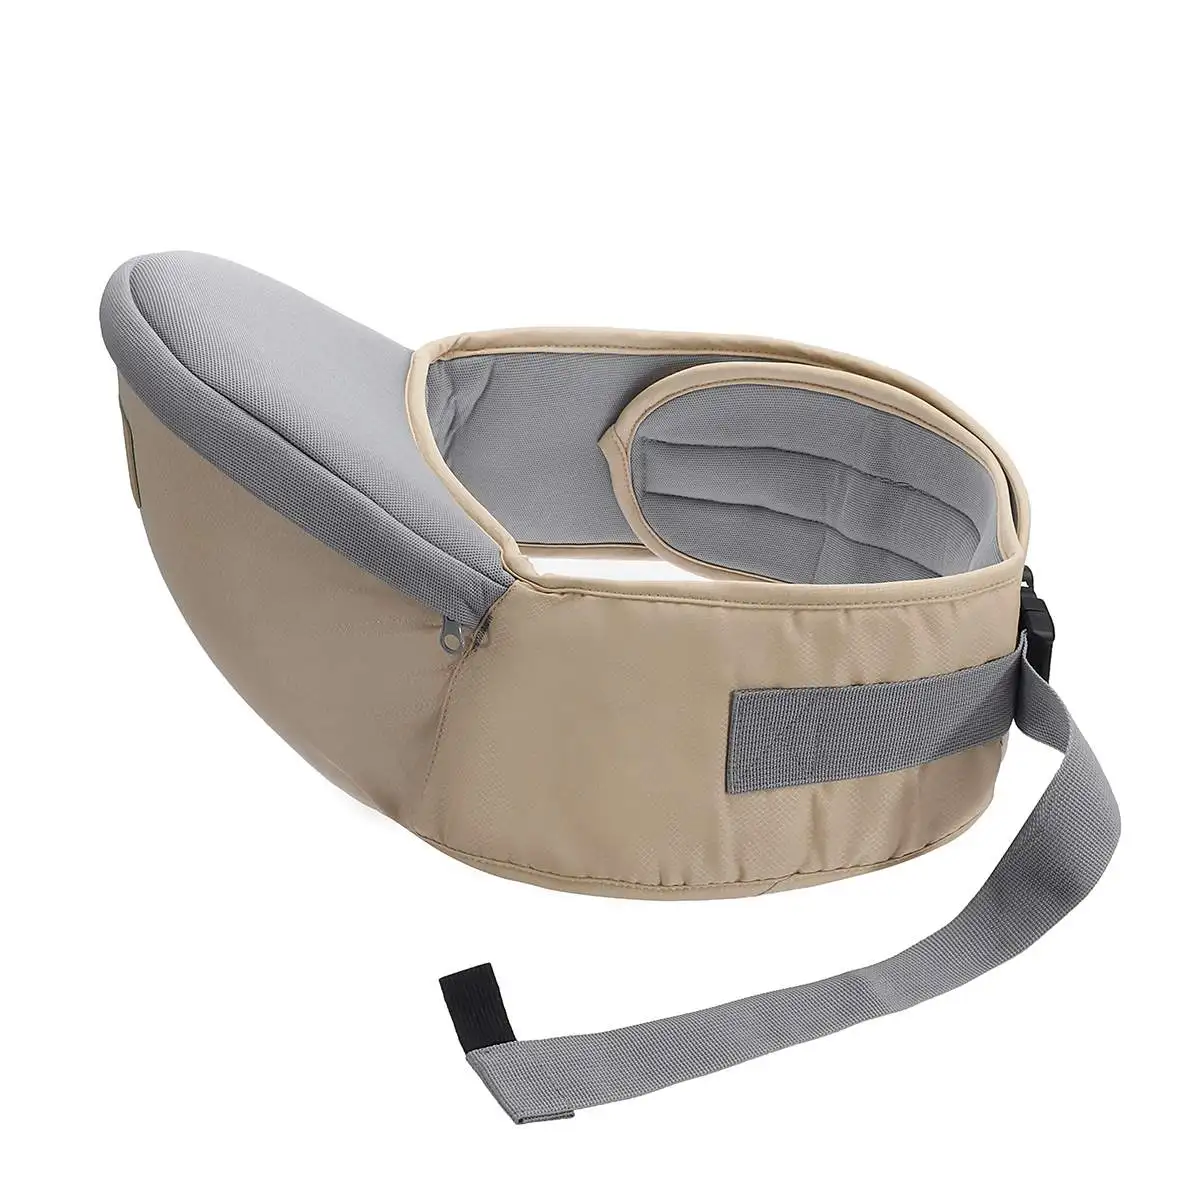 Хлопок кенгуру эргономичный рюкзак Хипсит регулируемый пояс слинг ходунки для новорожденных рюкзак сиденье - Цвет: Khaki